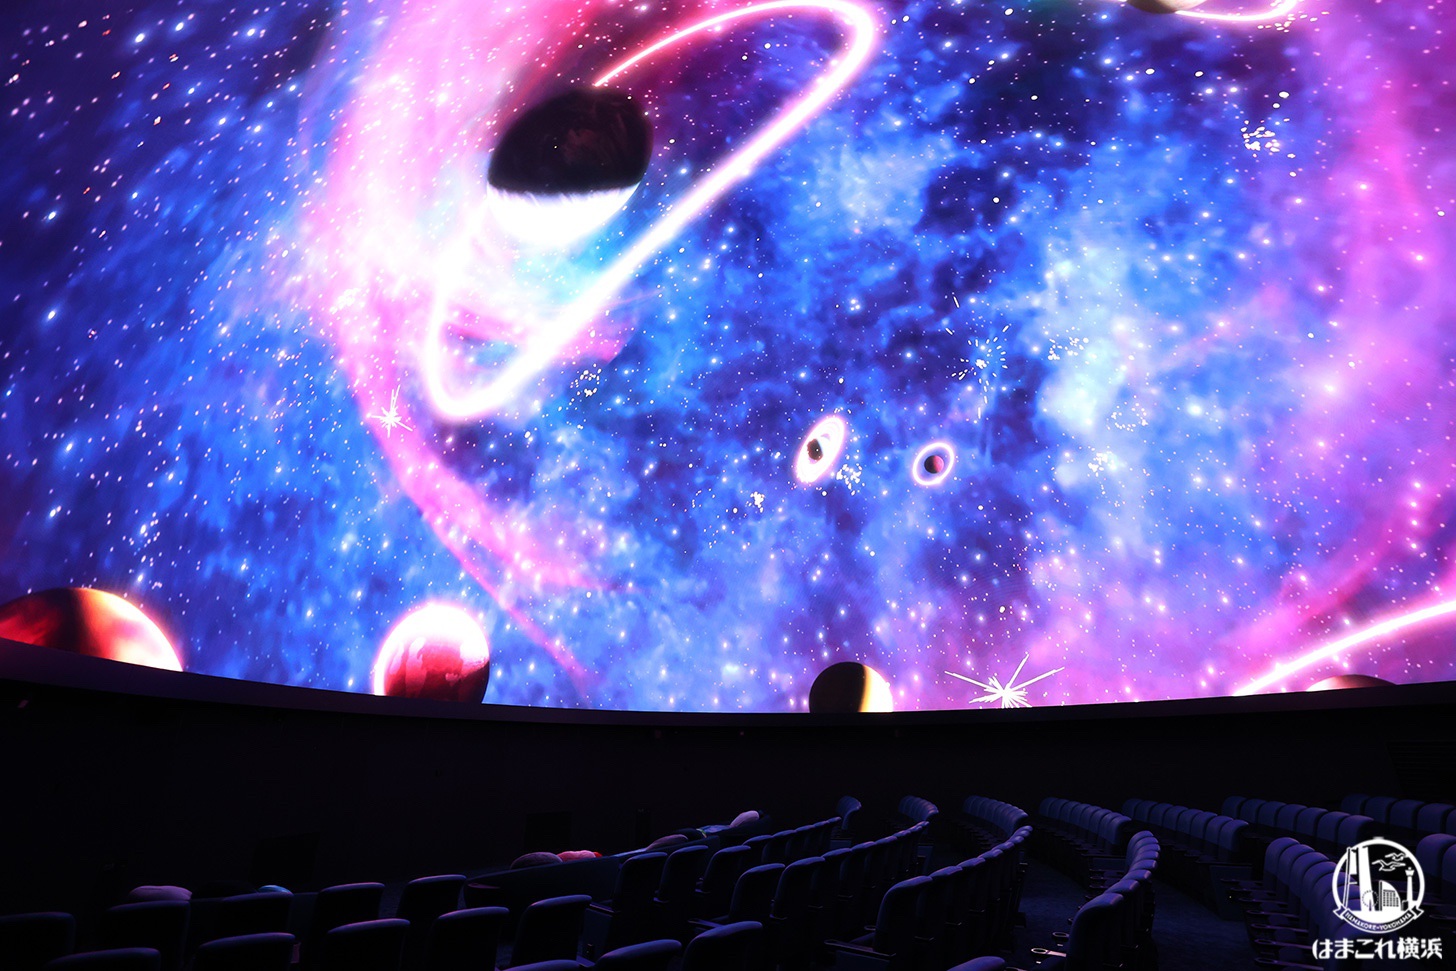 コニカミノルタプラネタリアYOKOHAMA ドーム内で見た宇宙の映像